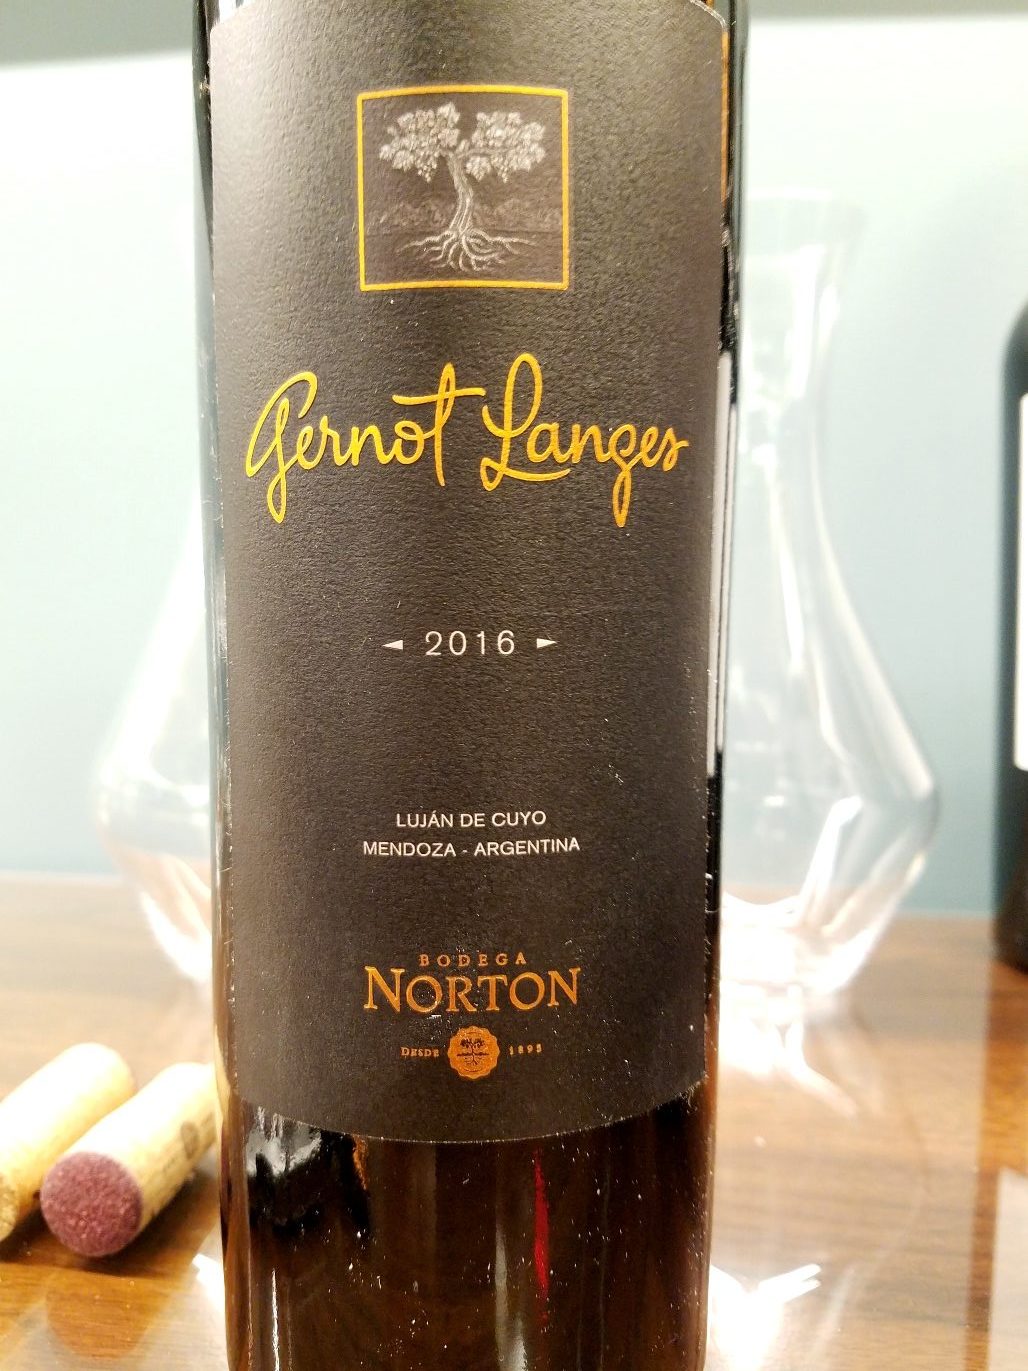 Bodega Norton, Gernot Langes 2016, Luján de Cuyo, Mendoza, Argentina, Wine Casual